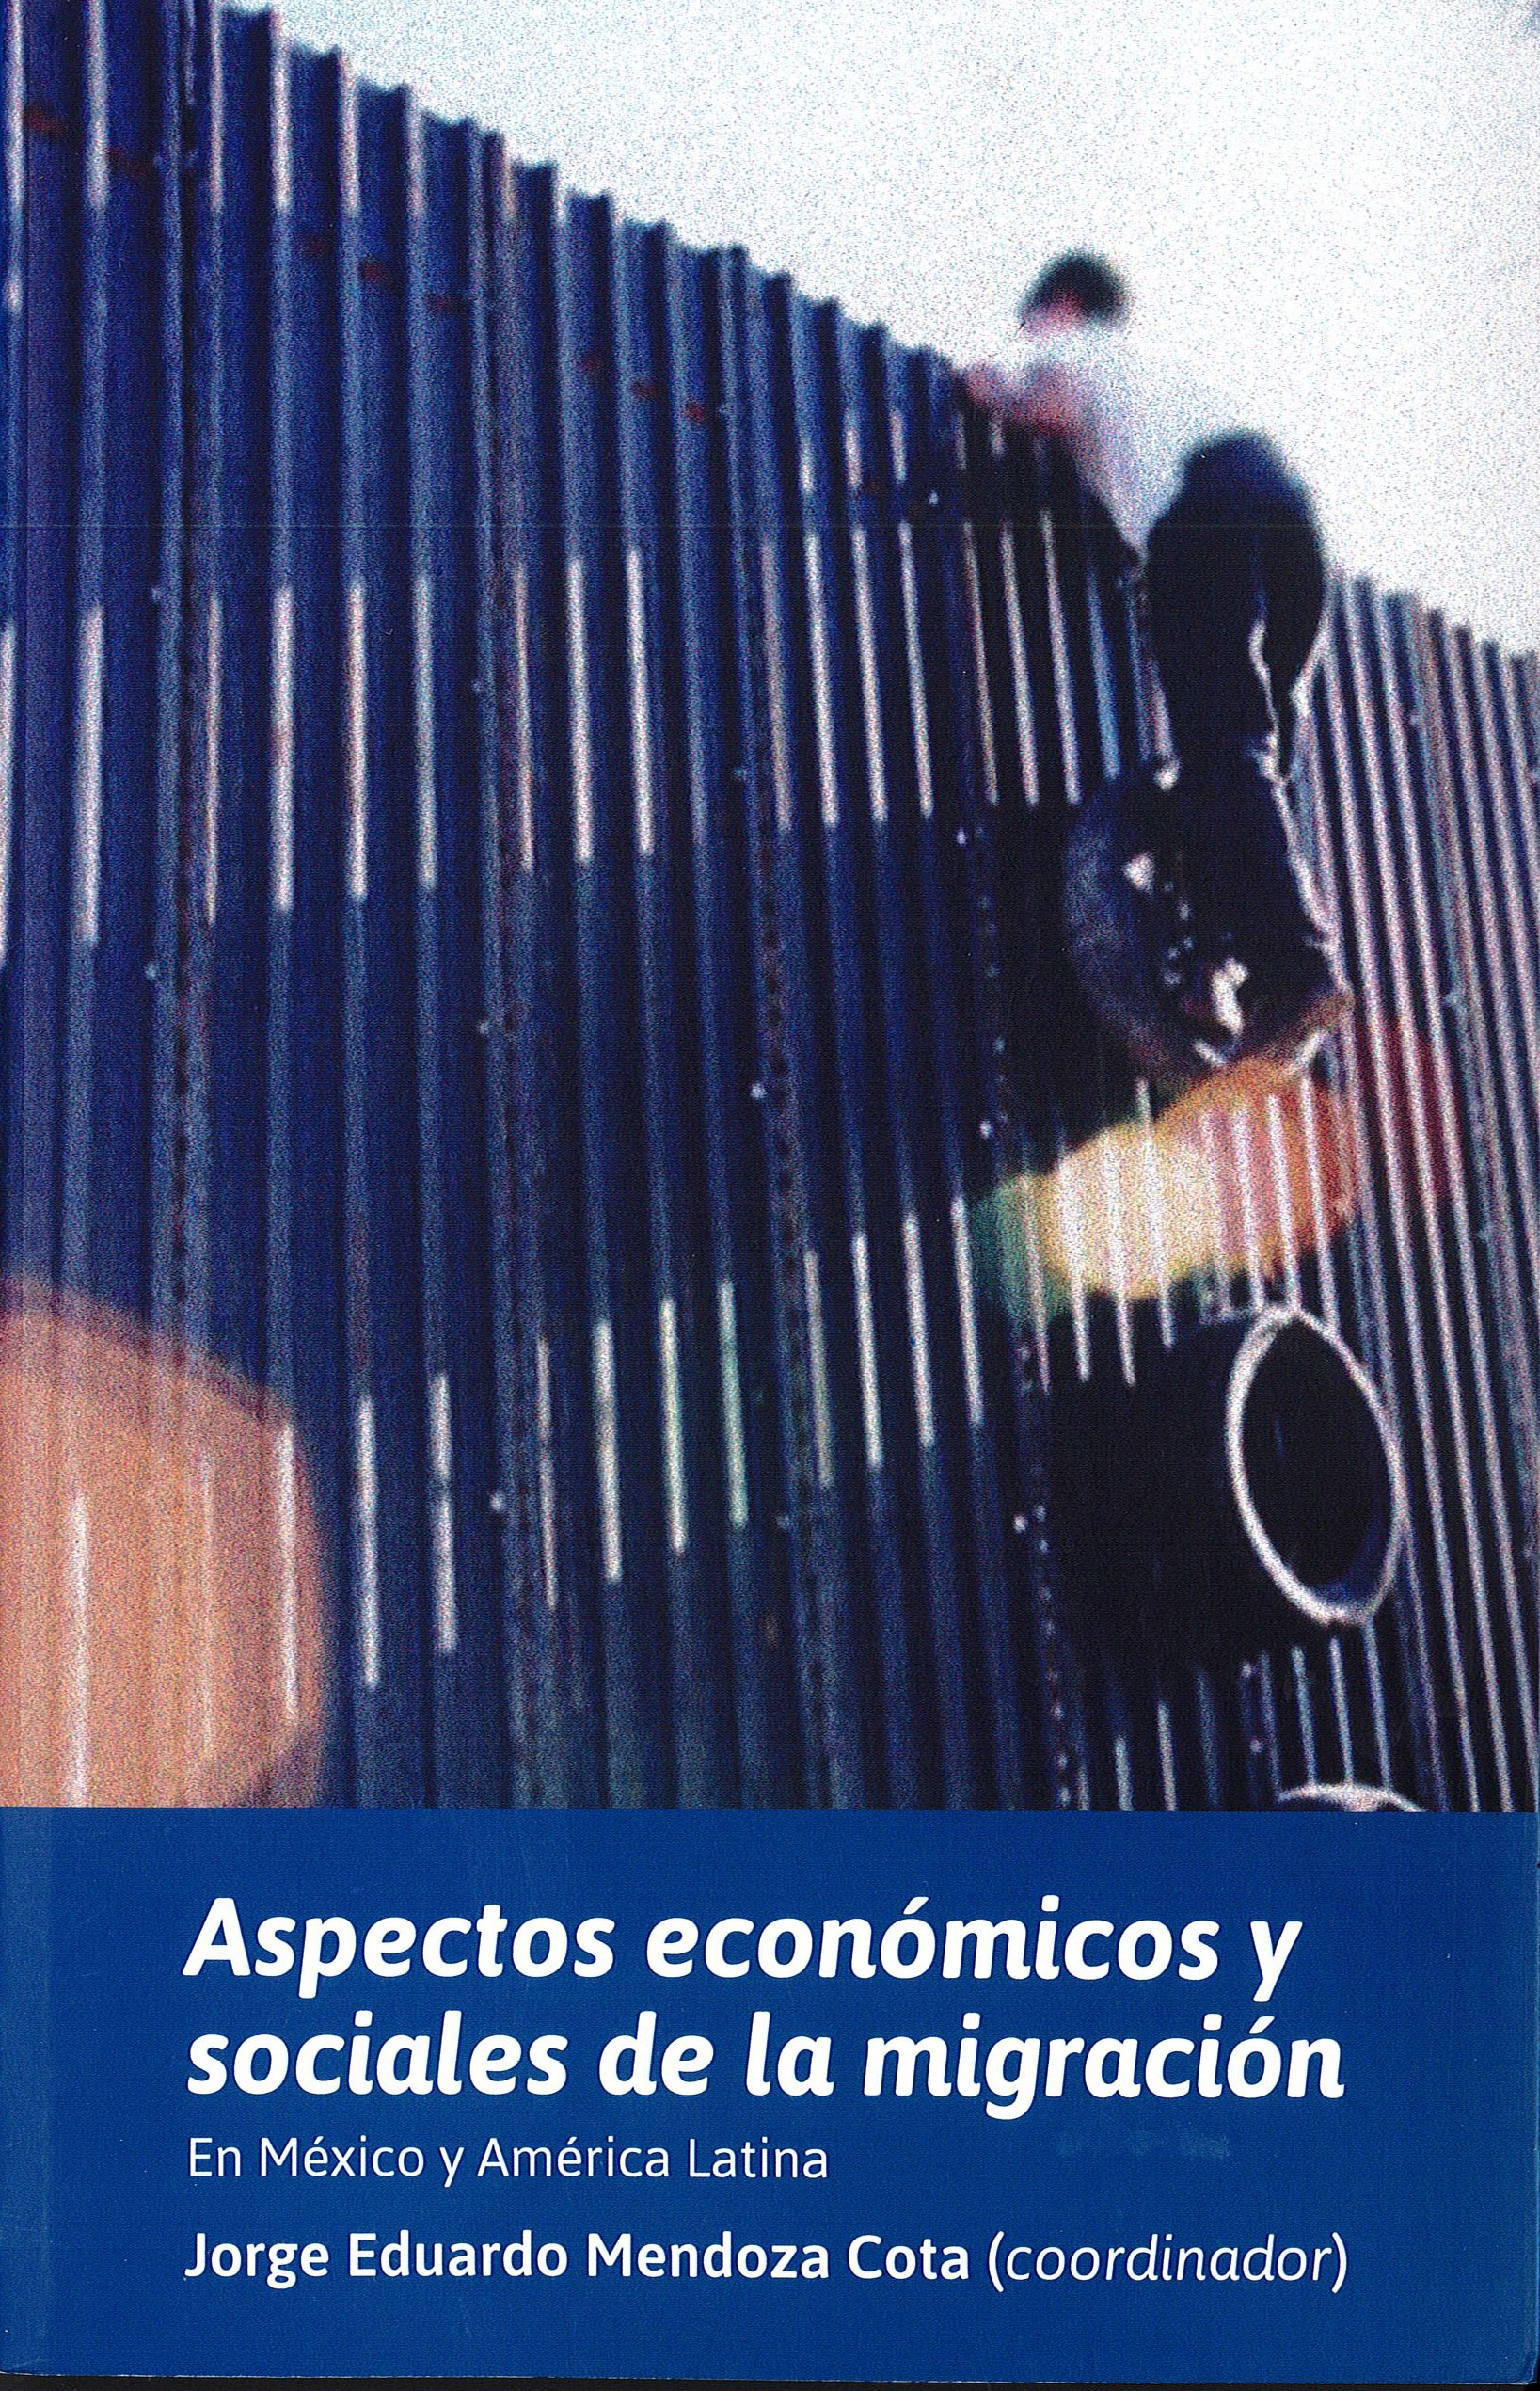 Imagen de portada del libro Aspectos económicos y sociales de la migración en México y América Latina